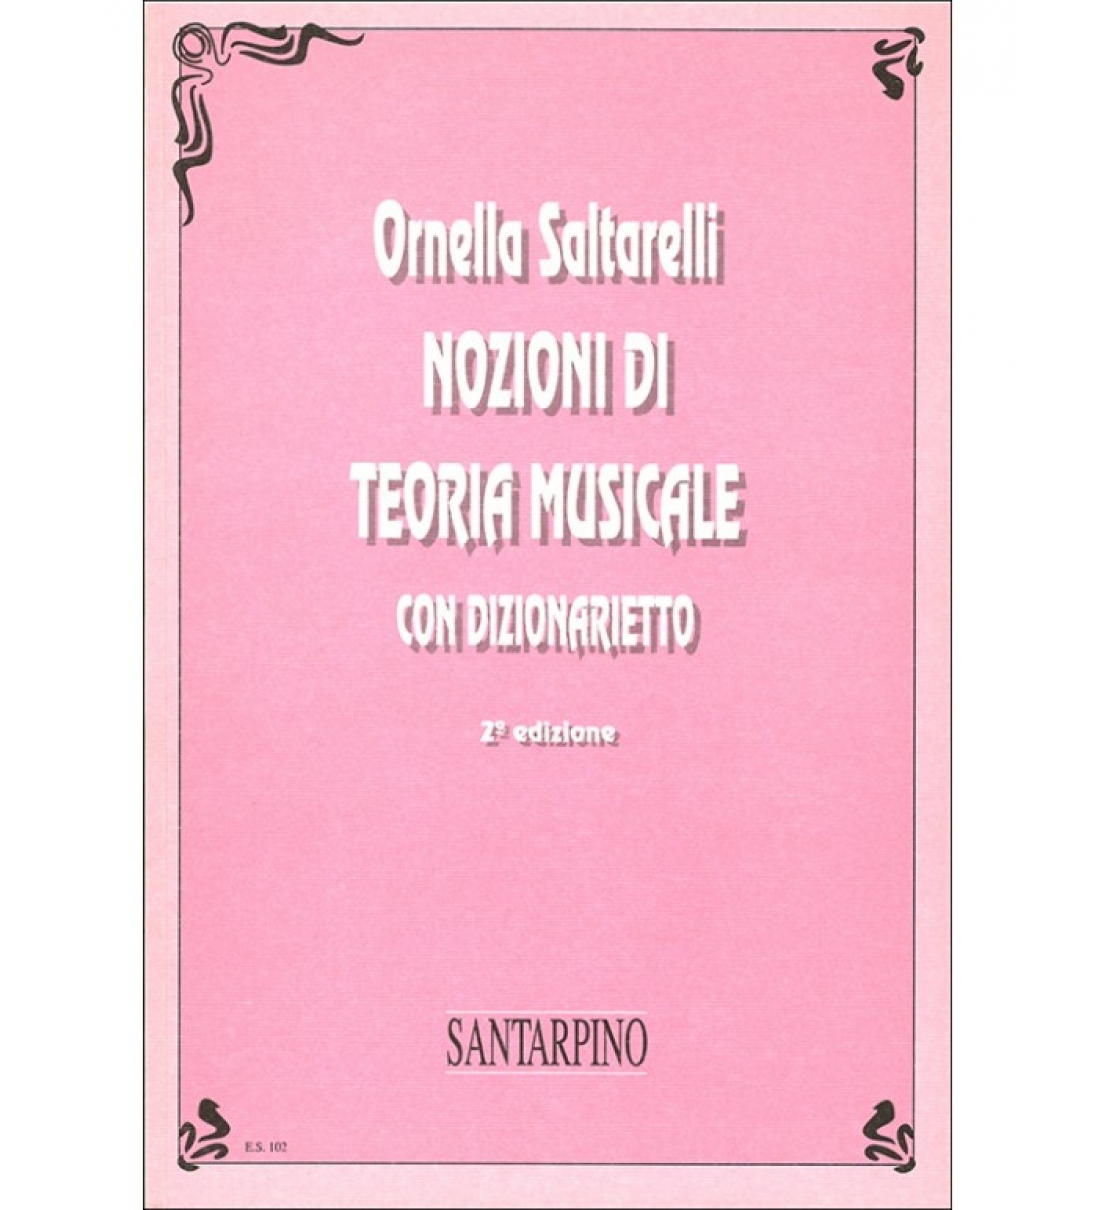 NOZIONI DI TEORIA MUSICALE - ORNELLA SALTARELLI